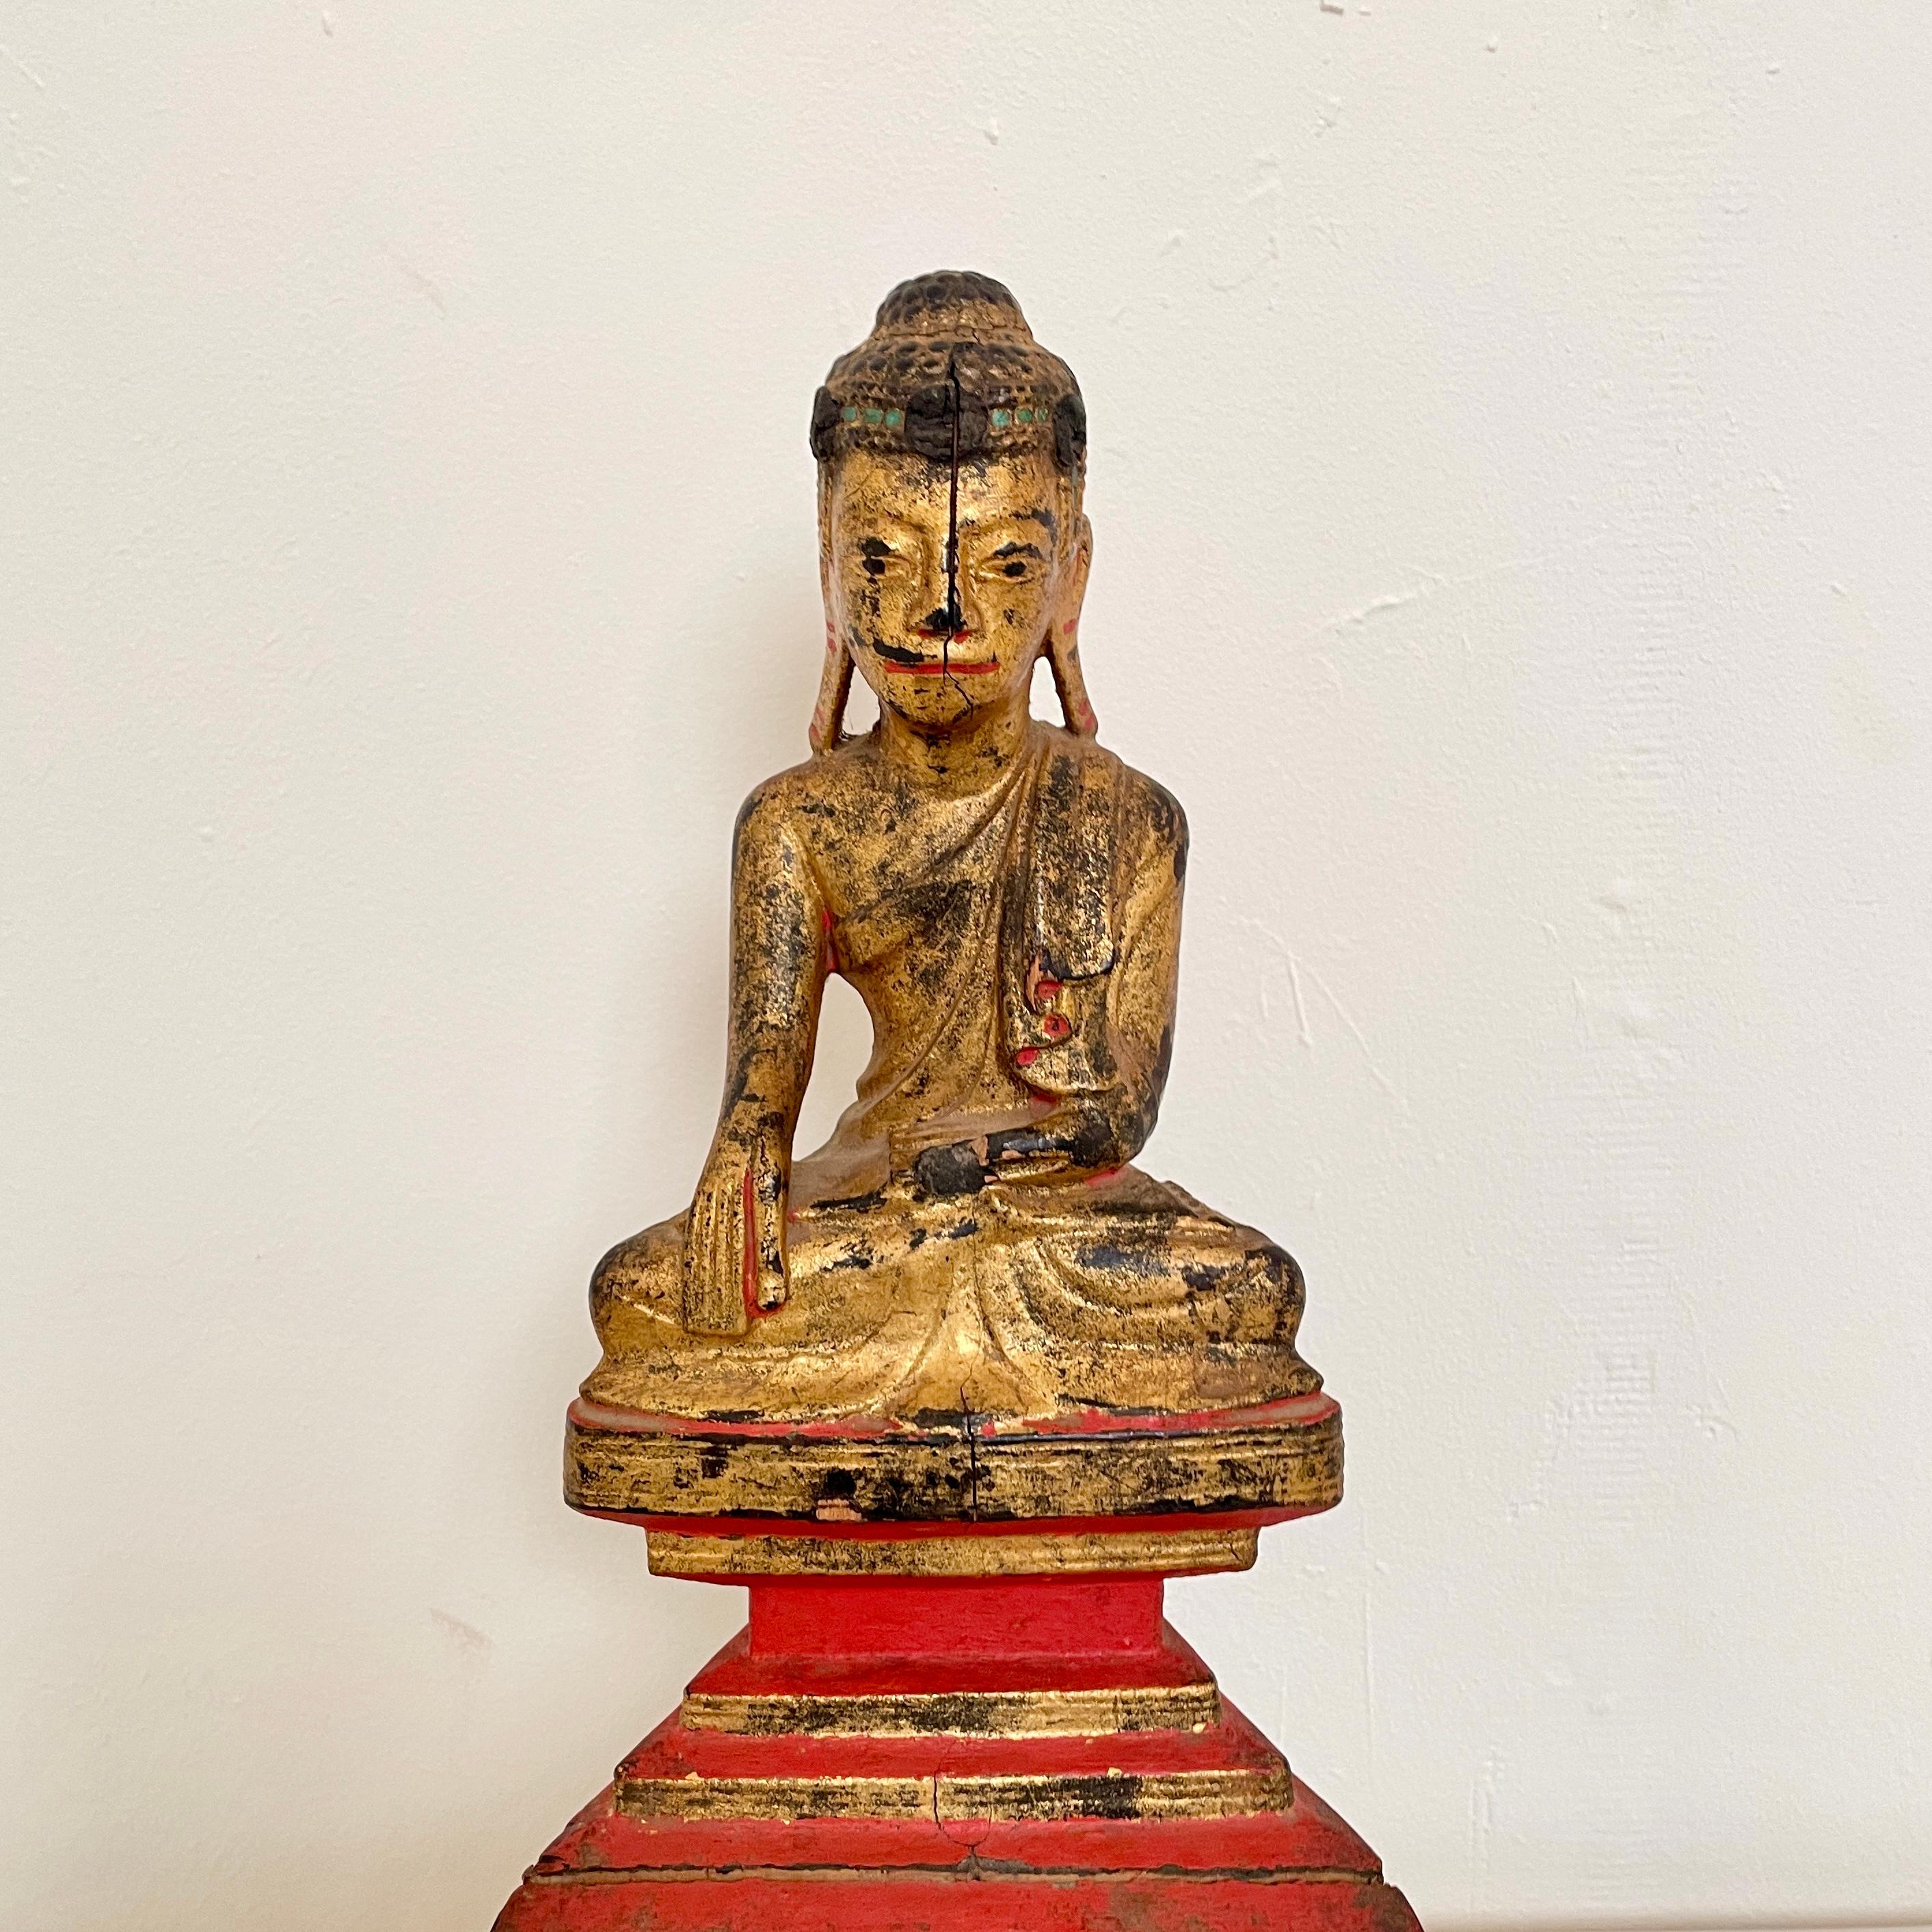 Fabriqué vers 1890, le bouddha assis de Mandalay (Birmanie), datant du XIXe siècle, est une incarnation exquise de la dévotion spirituelle et de la finesse artistique. Sculpté dans du bois doré et orné de détails complexes en laque, ce chef-d'œuvre